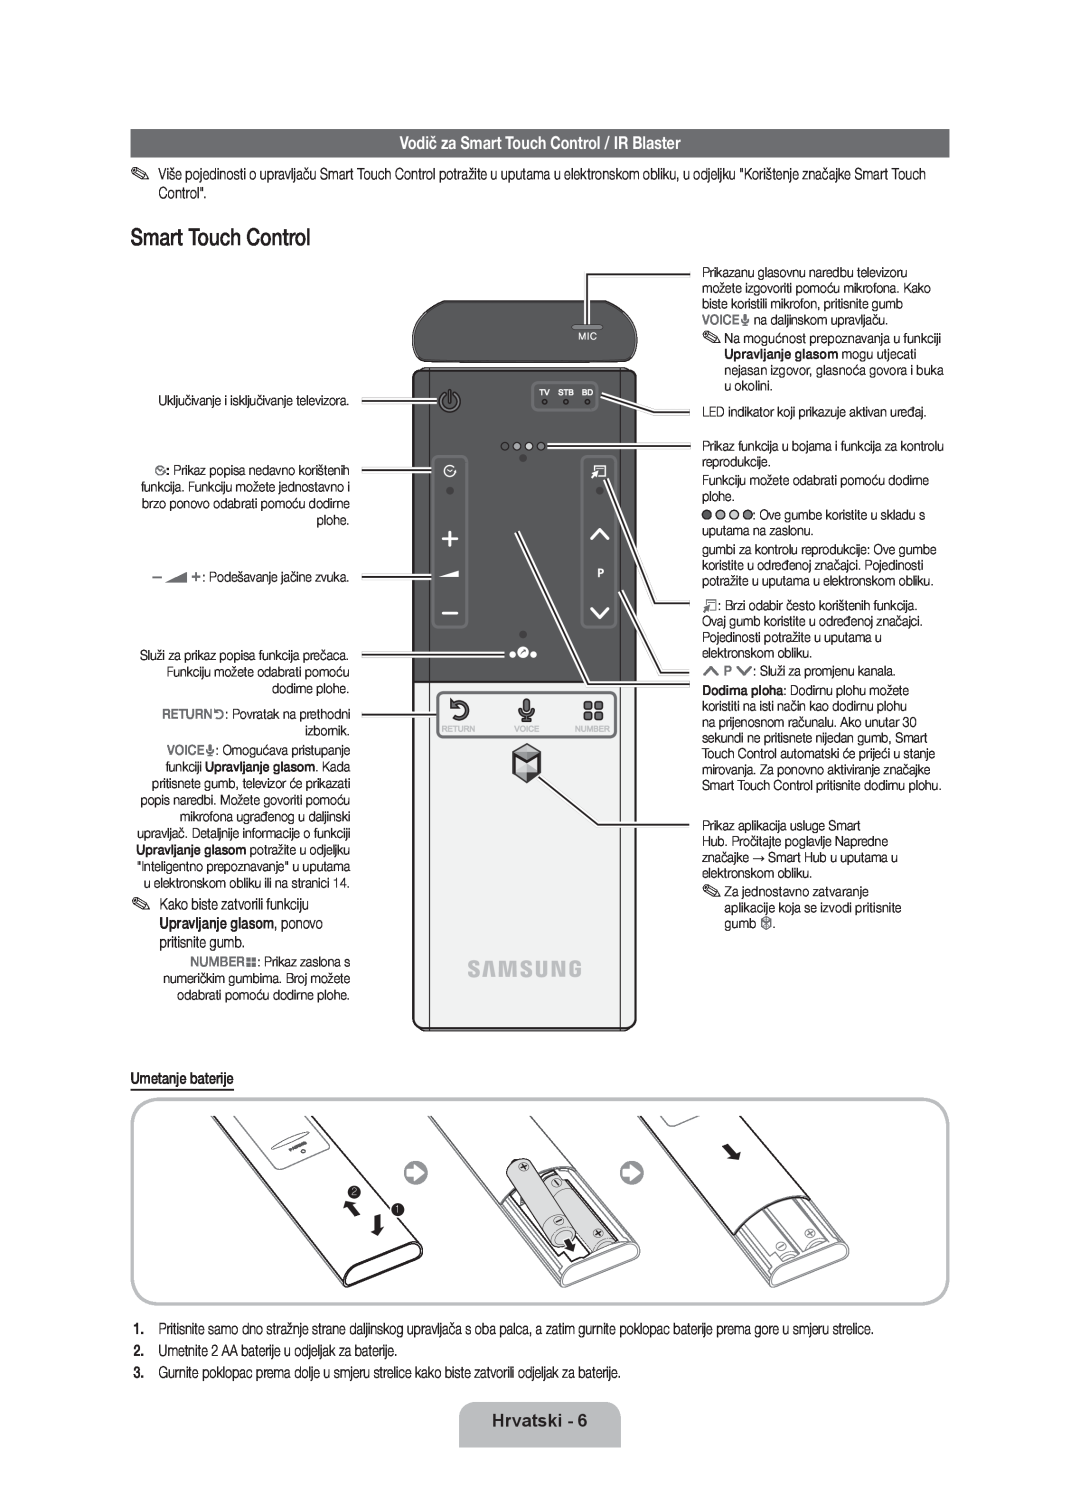 Samsung UE40ES8000SXXH, UE46ES8000SXXN manual Vodič za Smart Touch Control / IR Blaster, Hrvatski, Umetanje baterije 